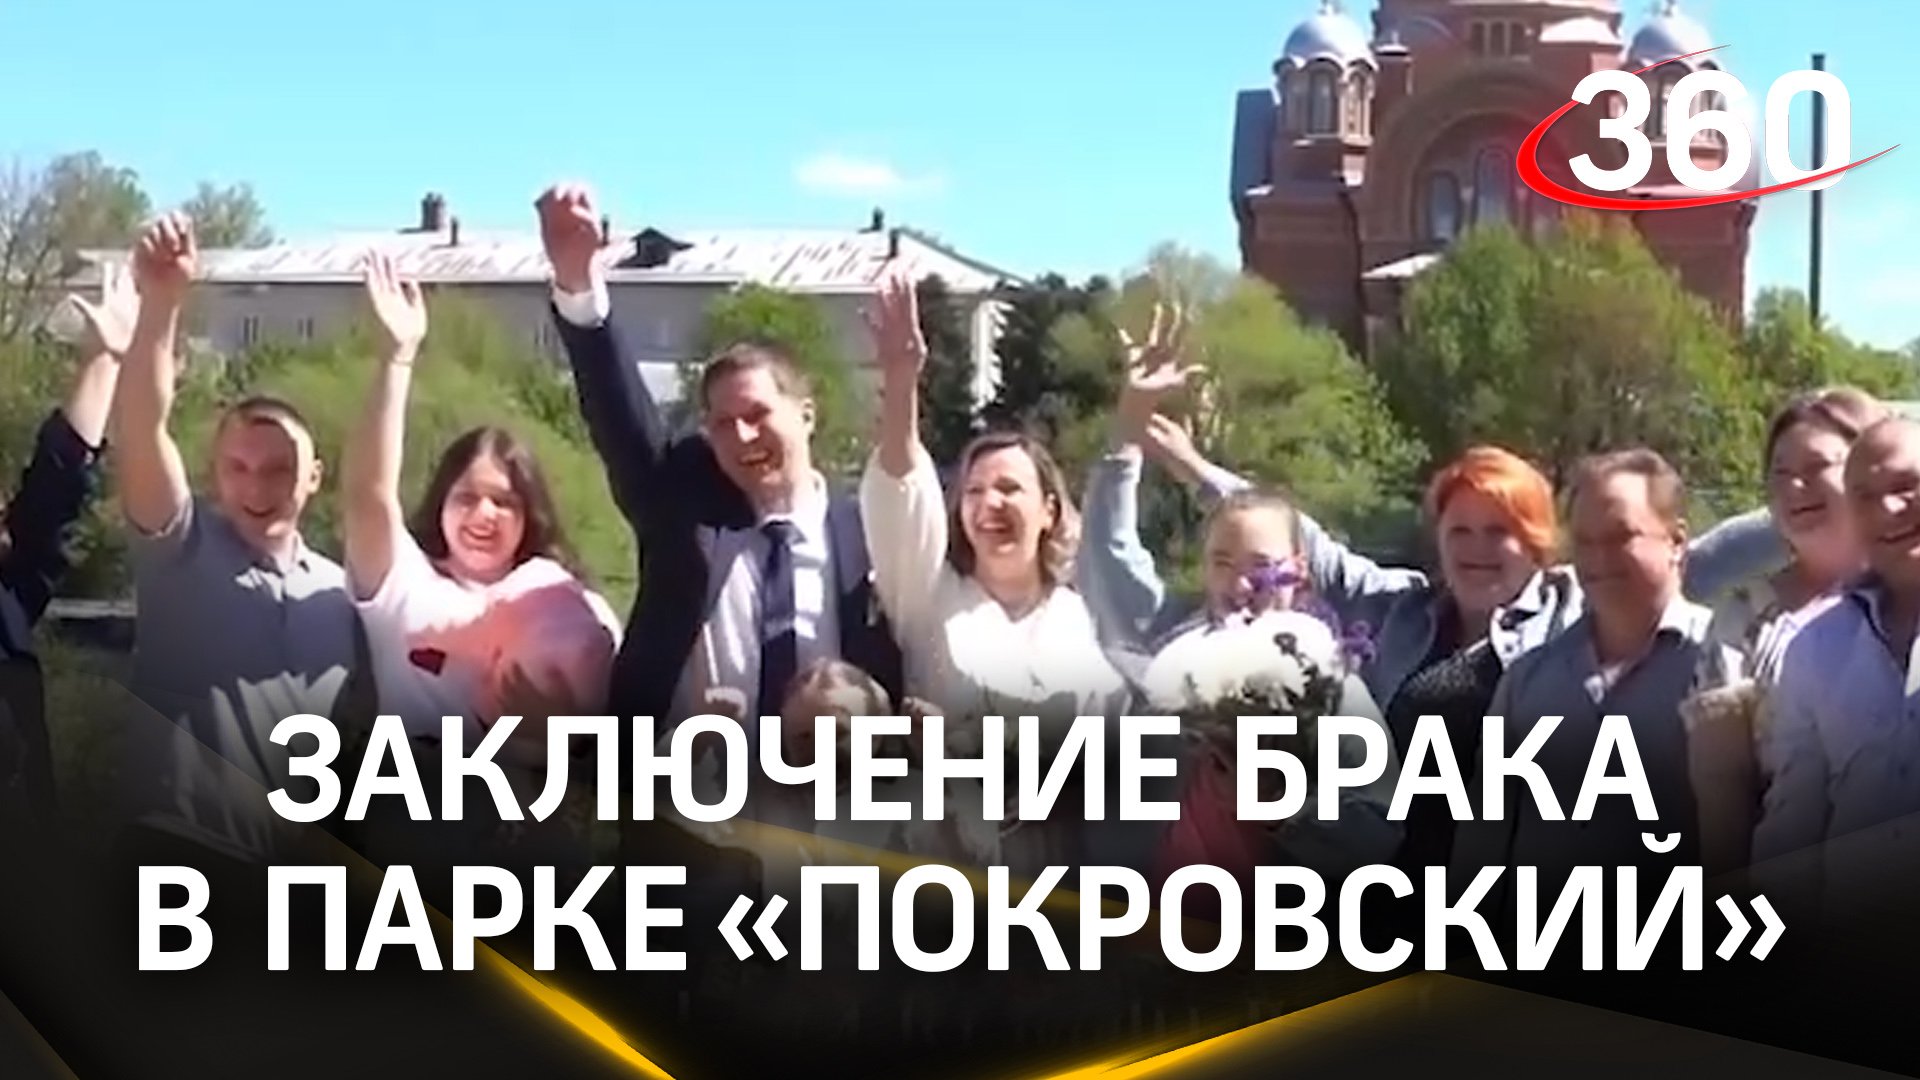 В парке «Покровский» впервые зарегистрировали брак